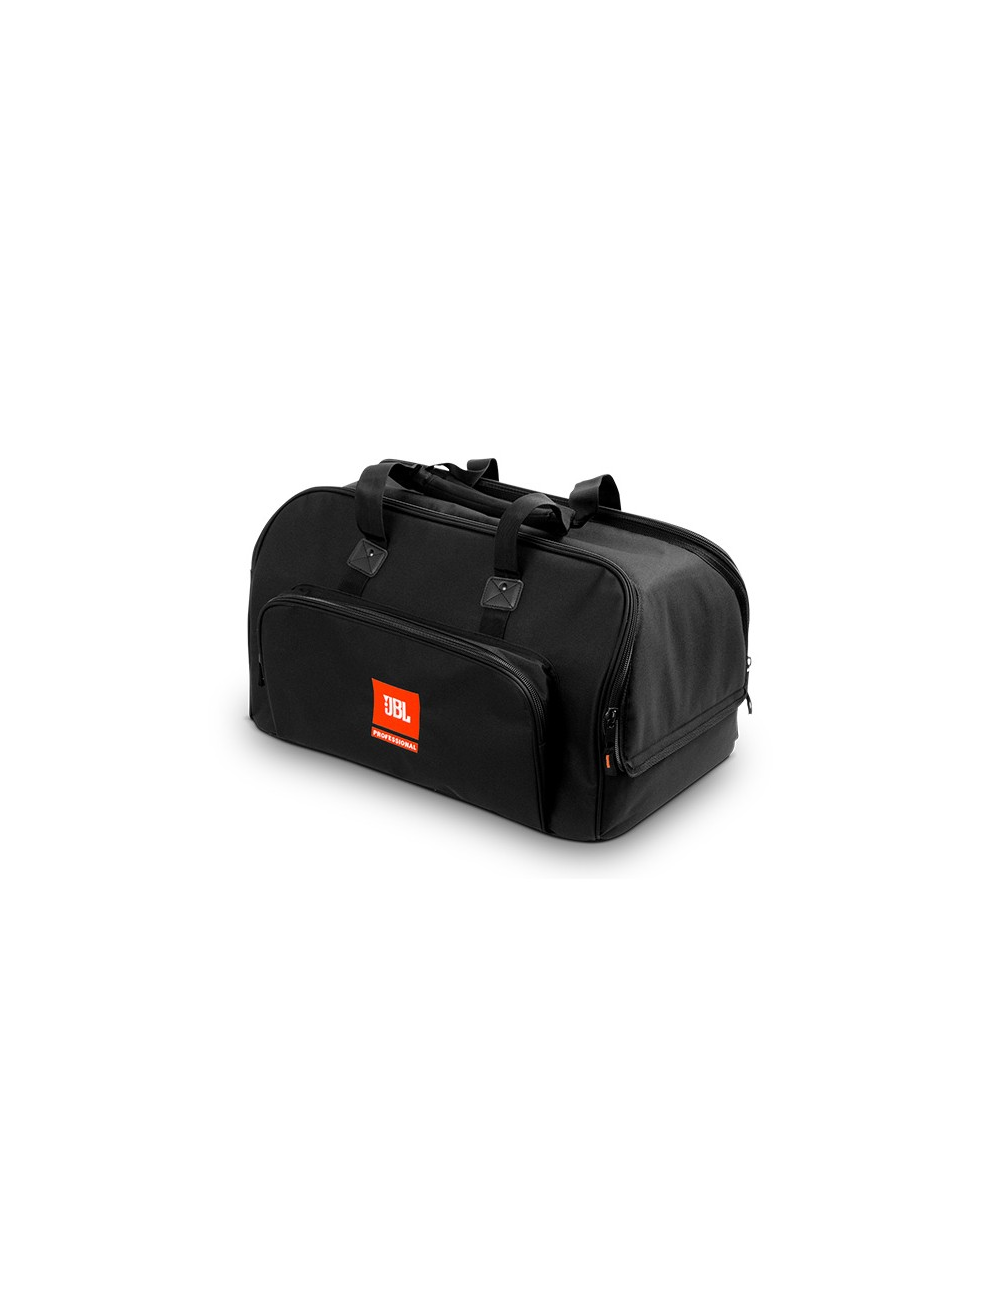 Carrying bag for EON612 speaker